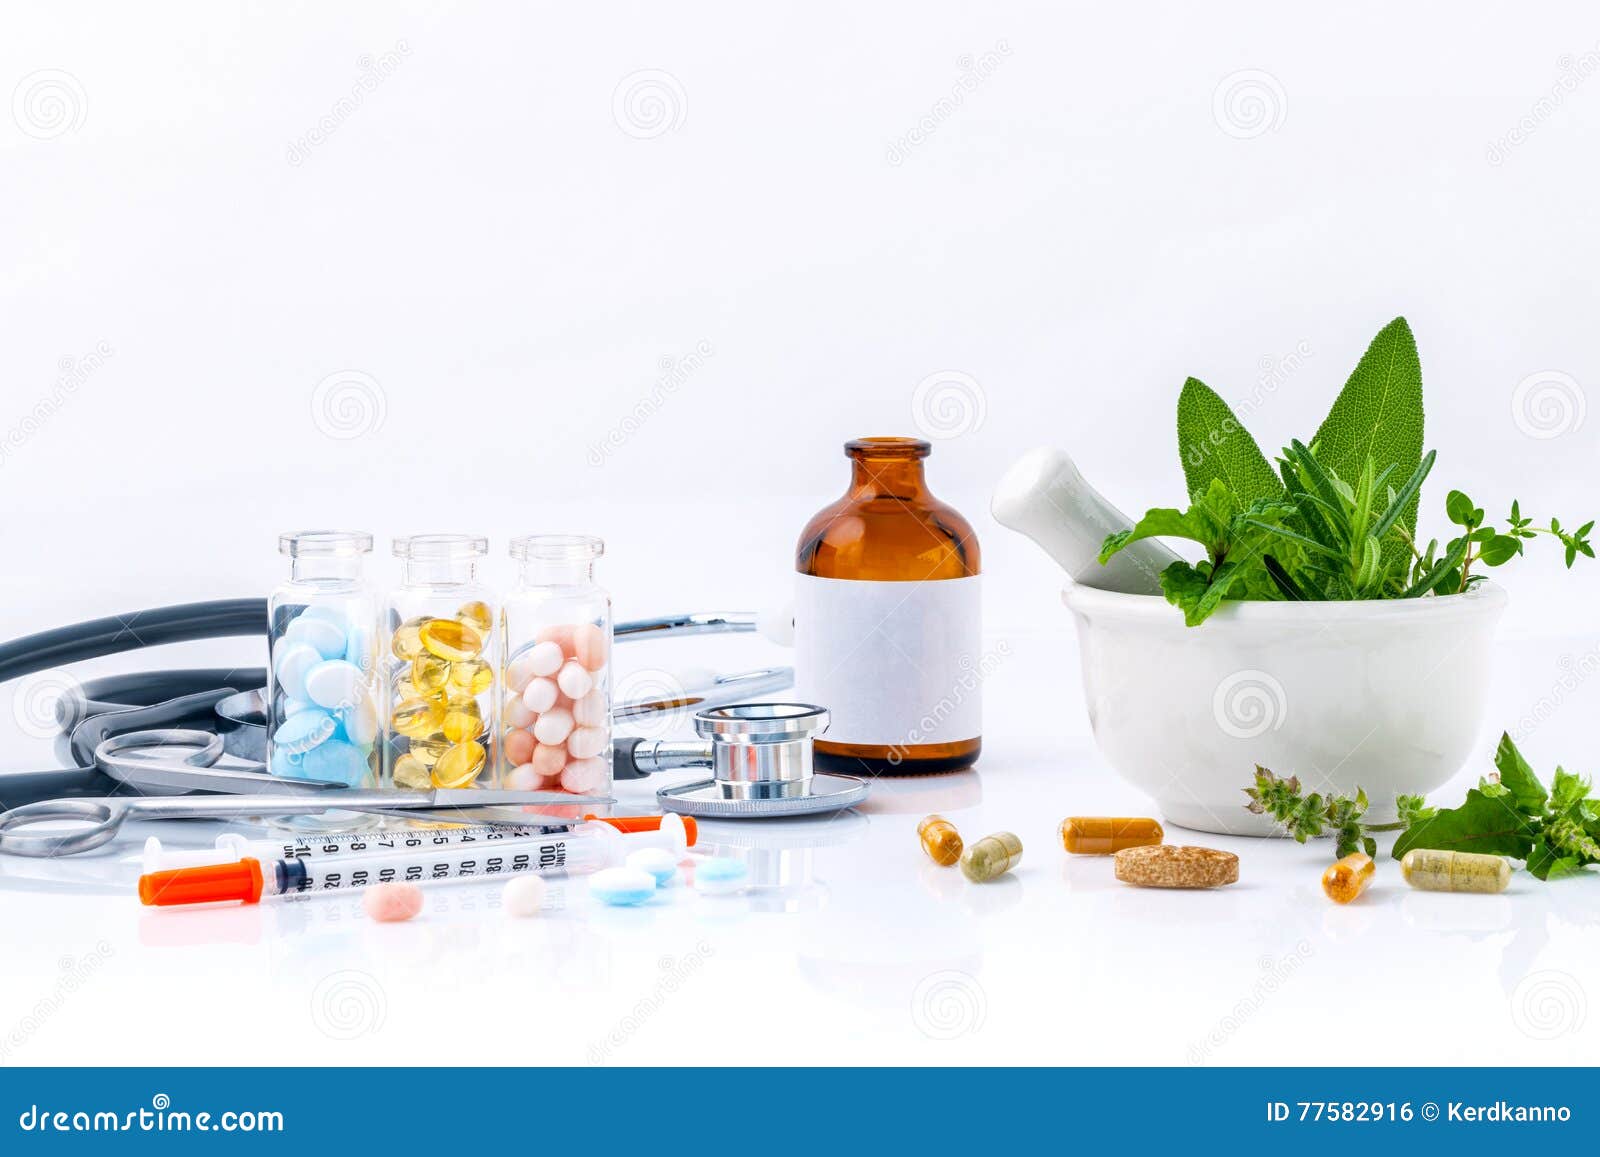 herbal medicine vs chemical medicine the alternative health care